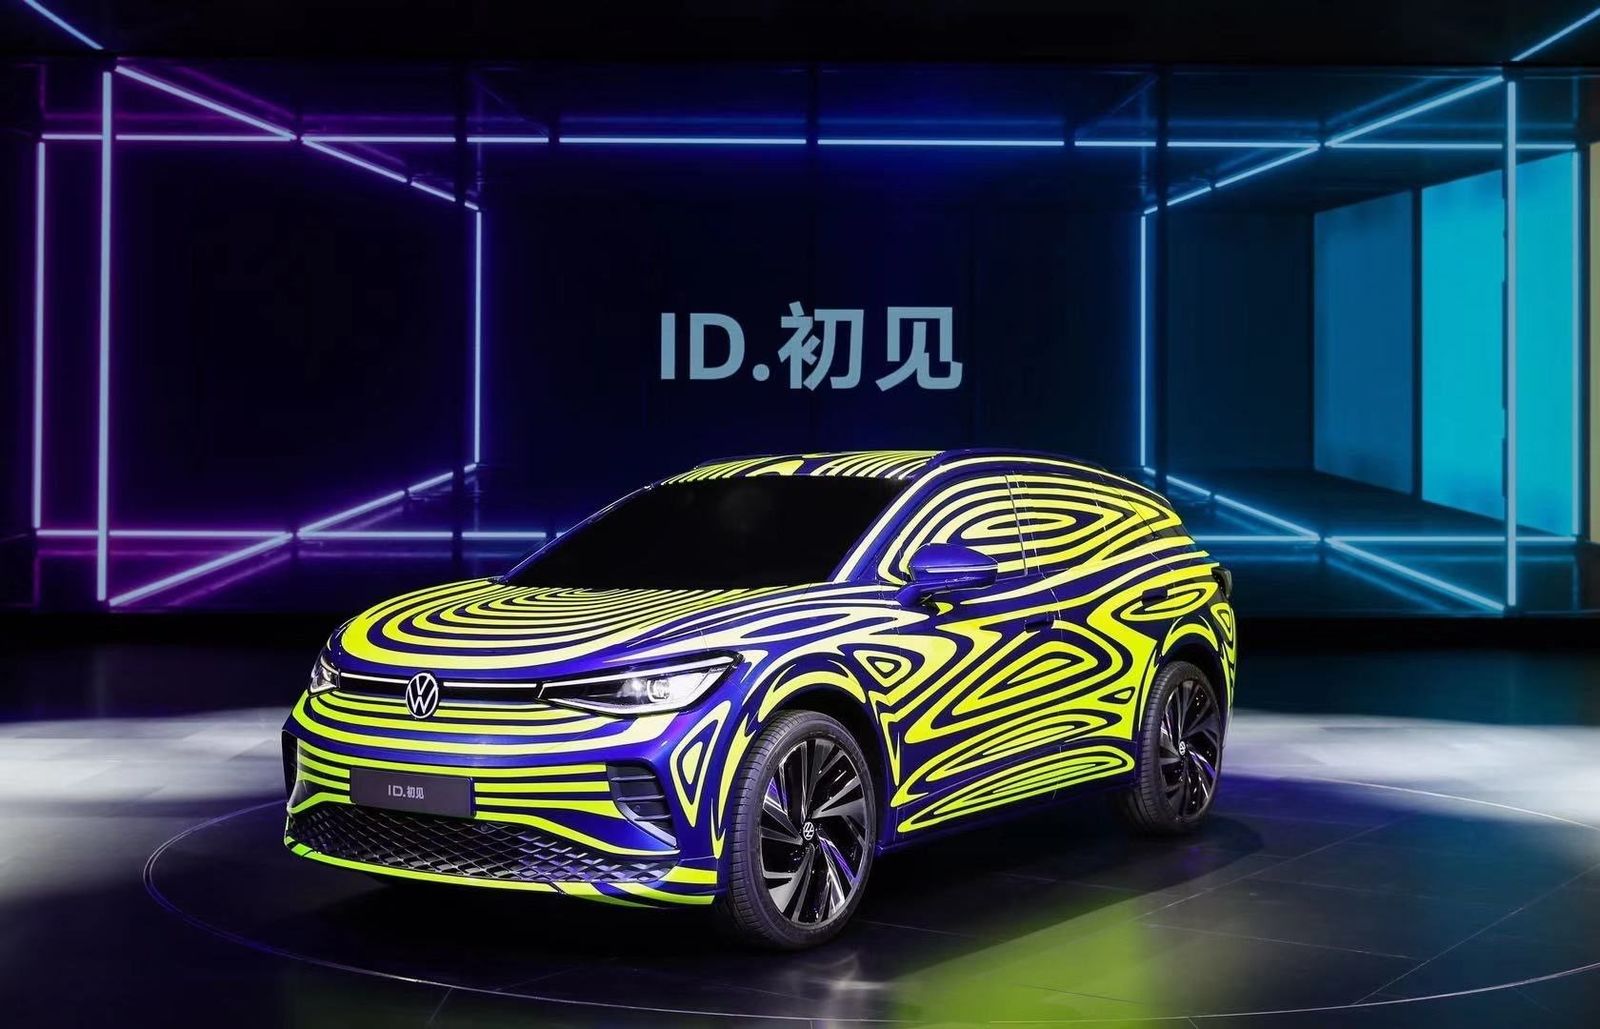 Volkswagen stärkt in China Markenauftritt: MEB-Roadmap, neue Modelle und New Brand Design